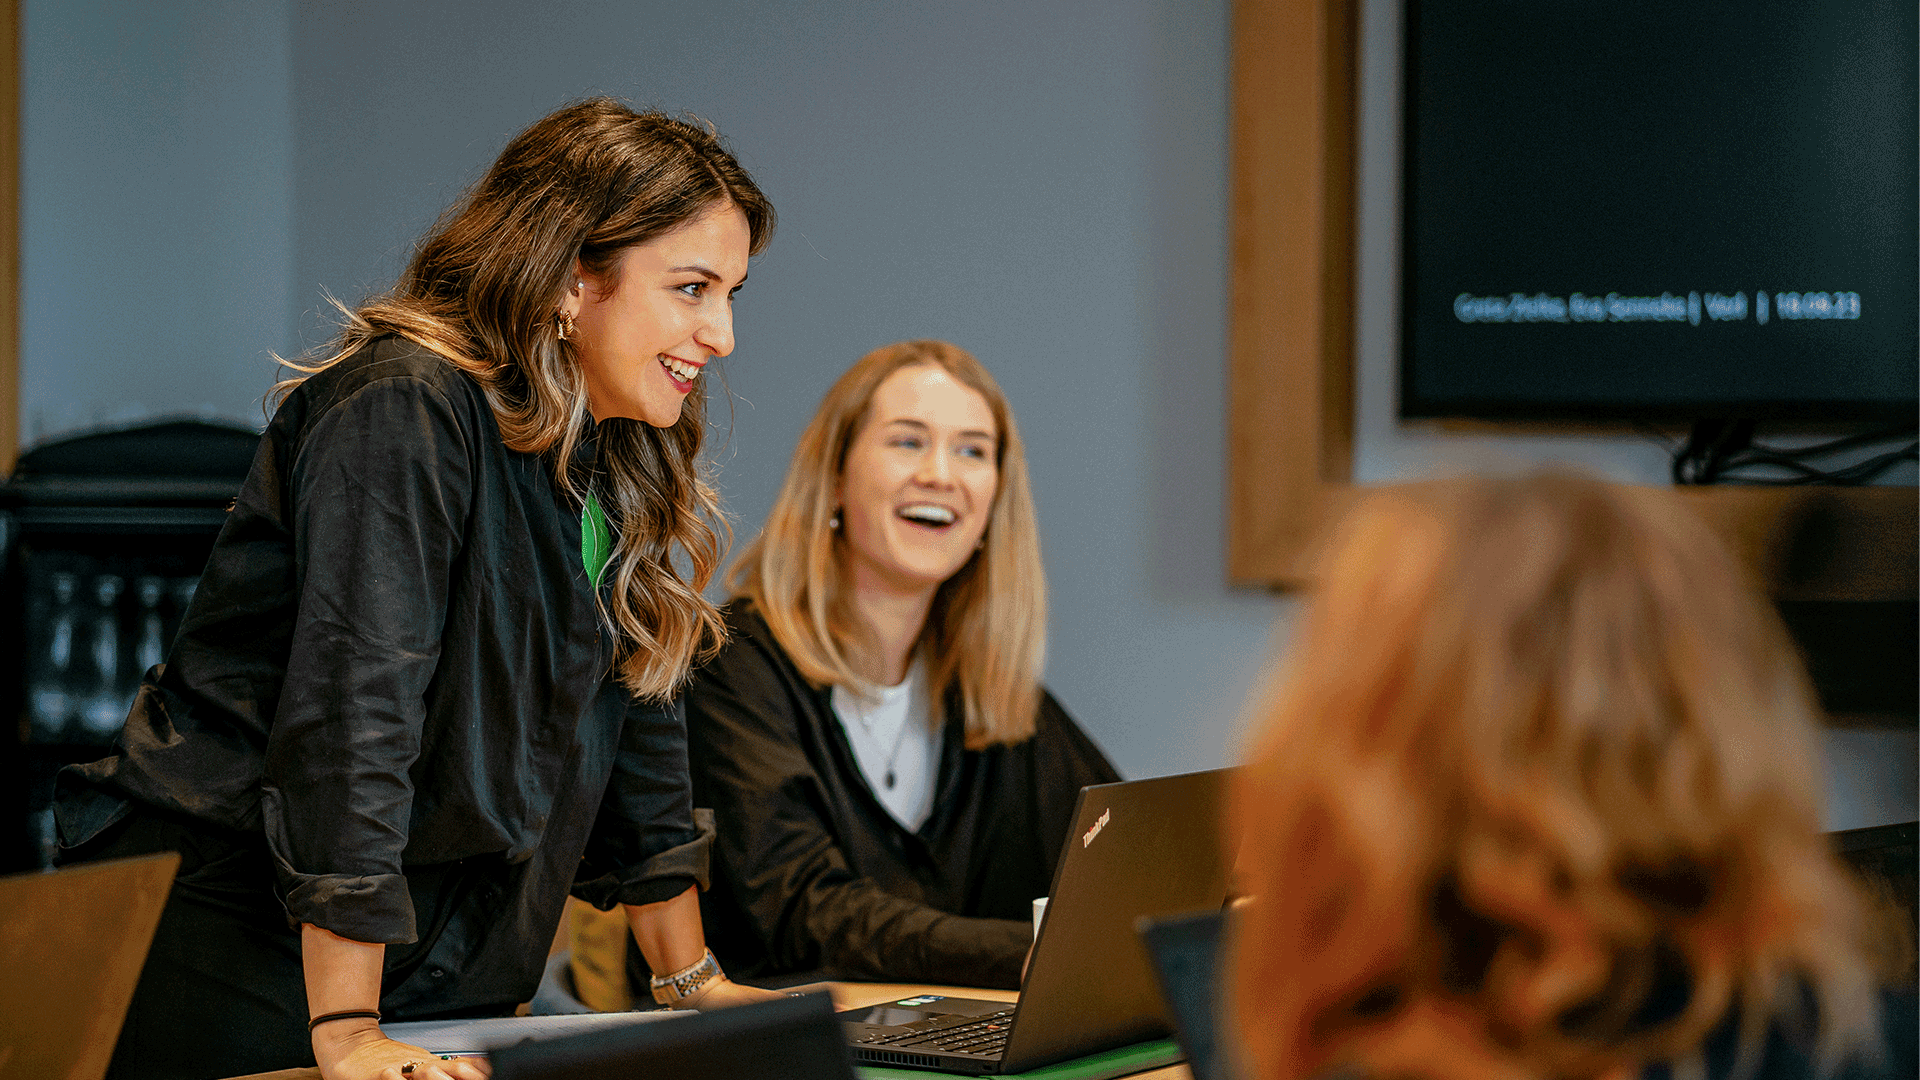 Zwei lächelnde Frauen in einem Büro, die zusammen an einem Laptop arbeiten. Eine sitzt, die andere steht neben ihr und zeigt auf den Bildschirm, während eine dritte Person mit dem Rücken zur Kamera sitzt.